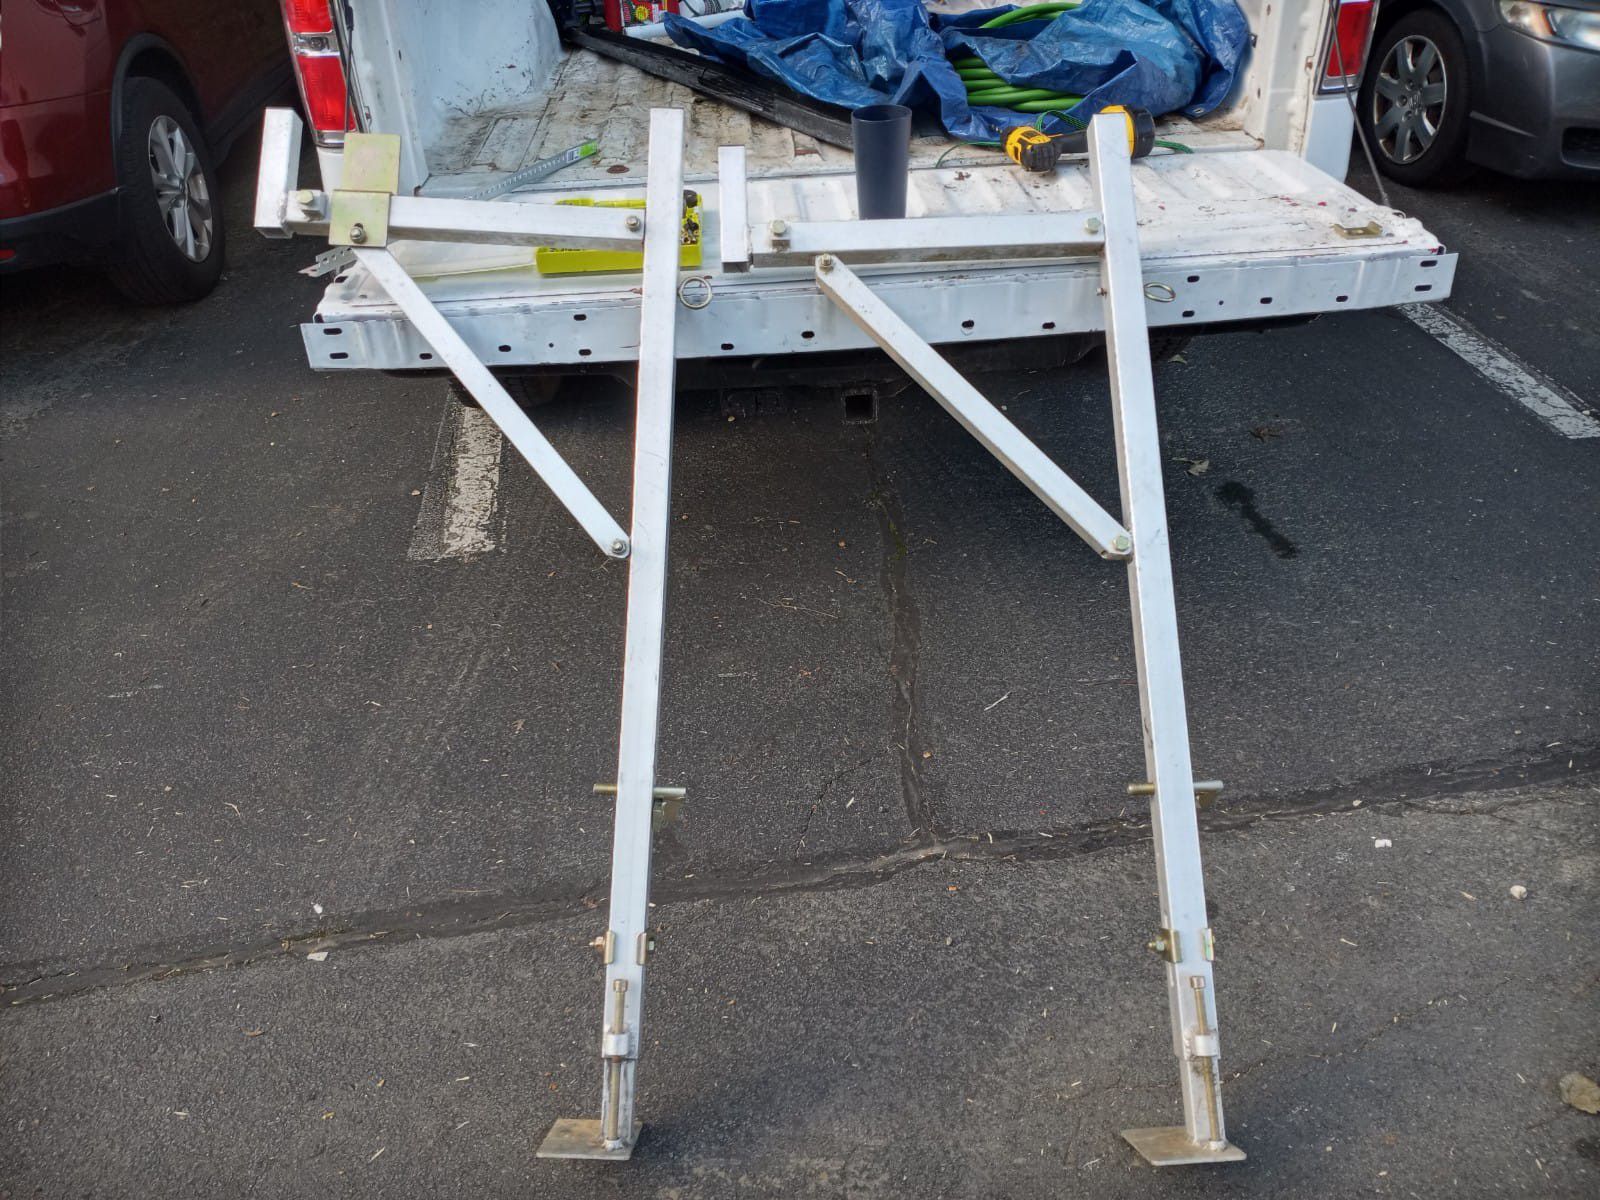 Aluminum racks for ladders